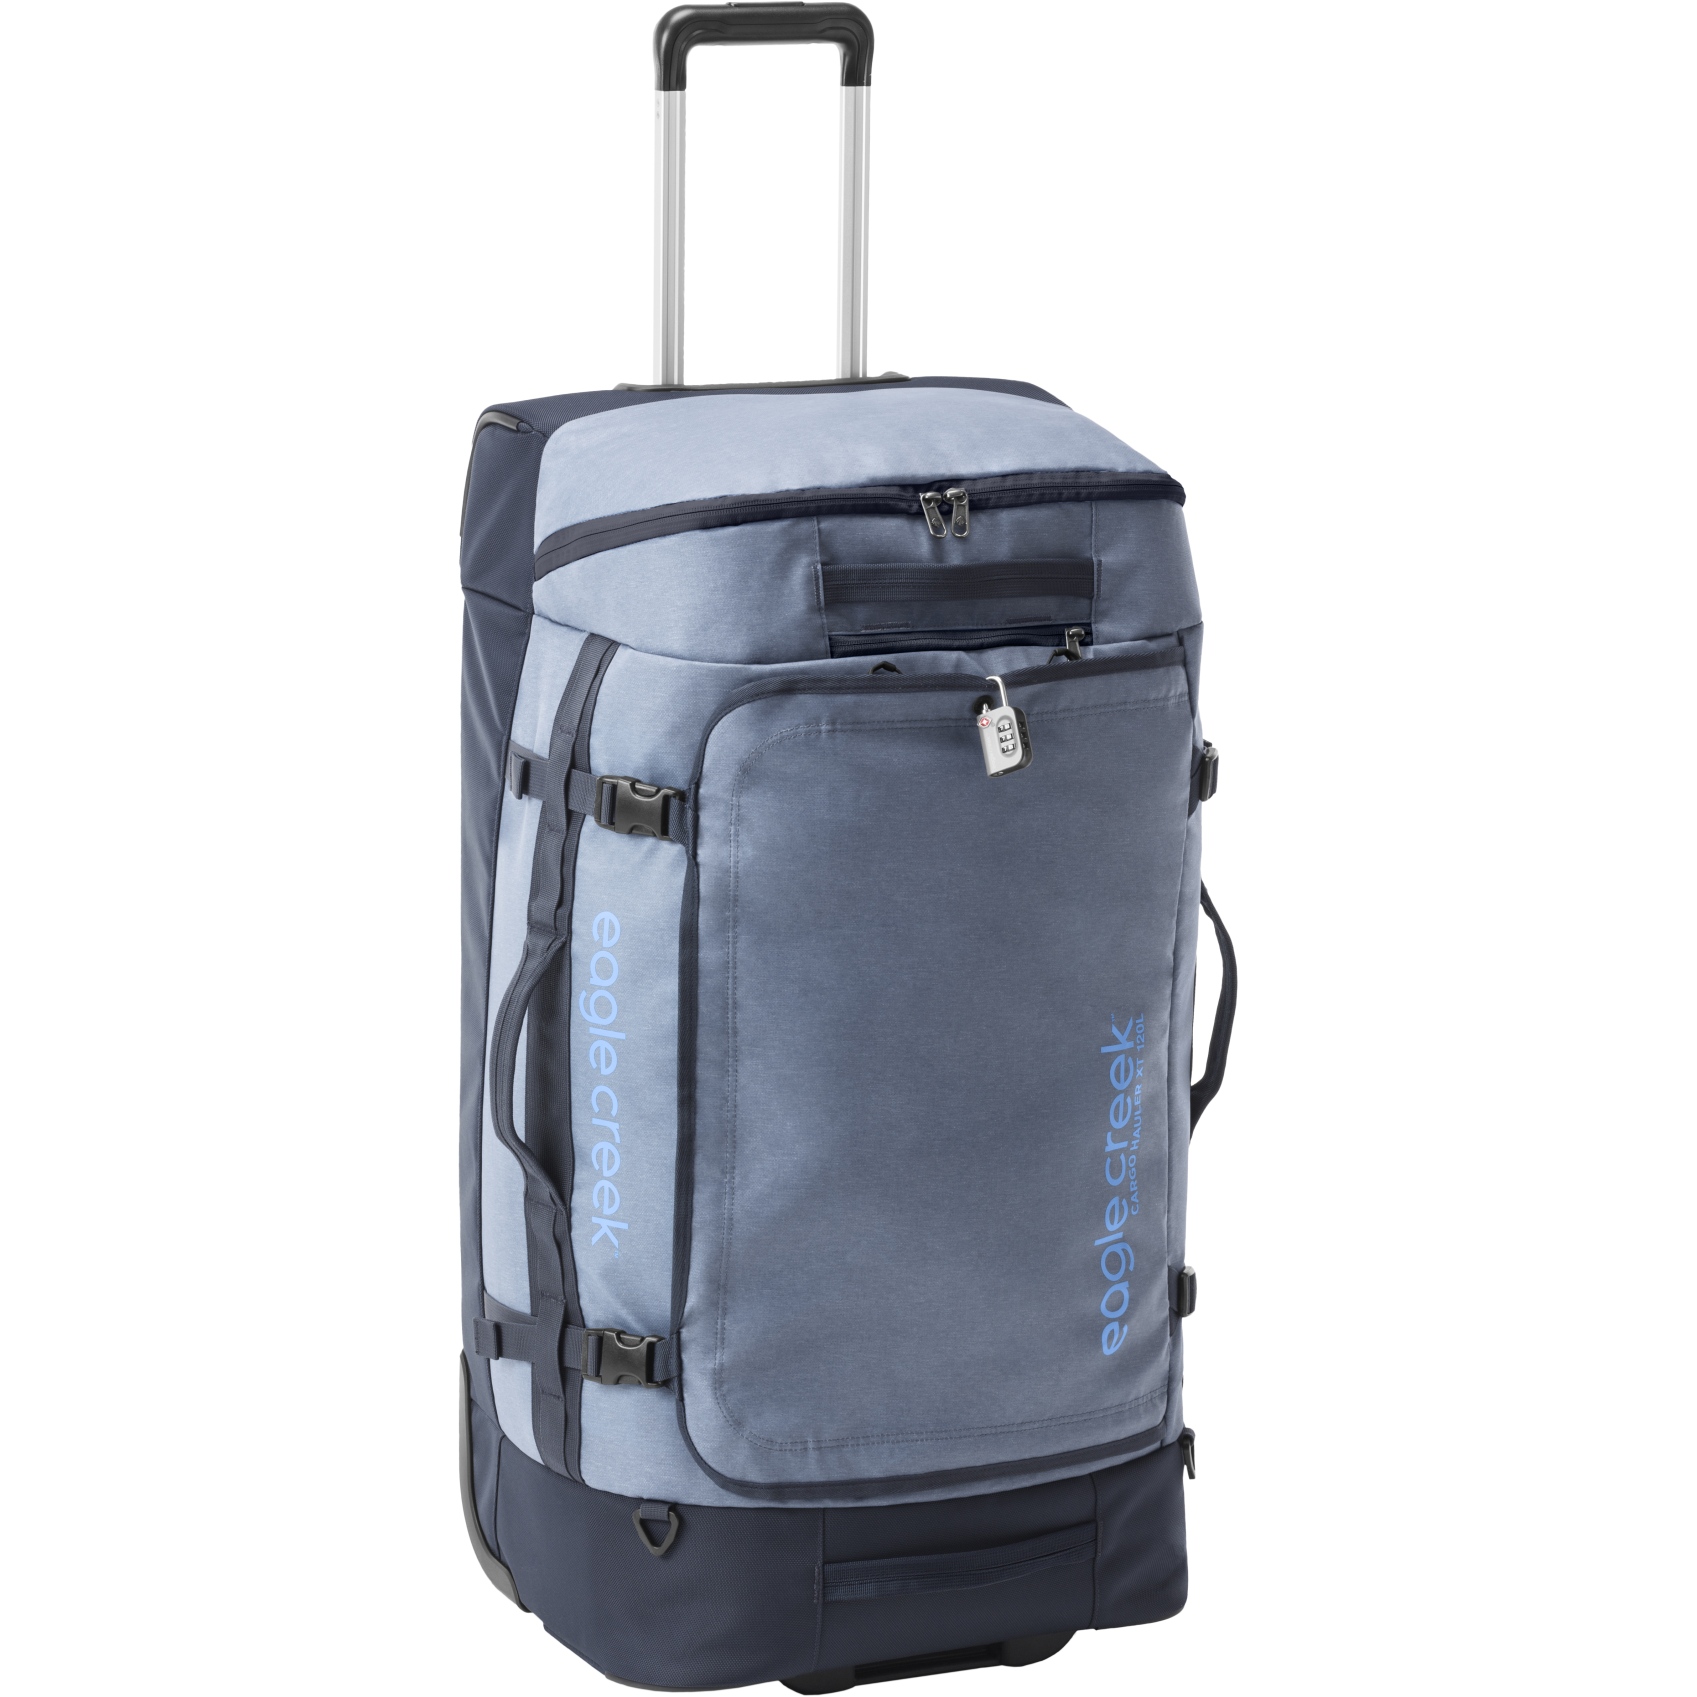 Produktbild von Eagle Creek Cargo Hauler XT Reisetasche mit Rollen - 120L - glacier blue